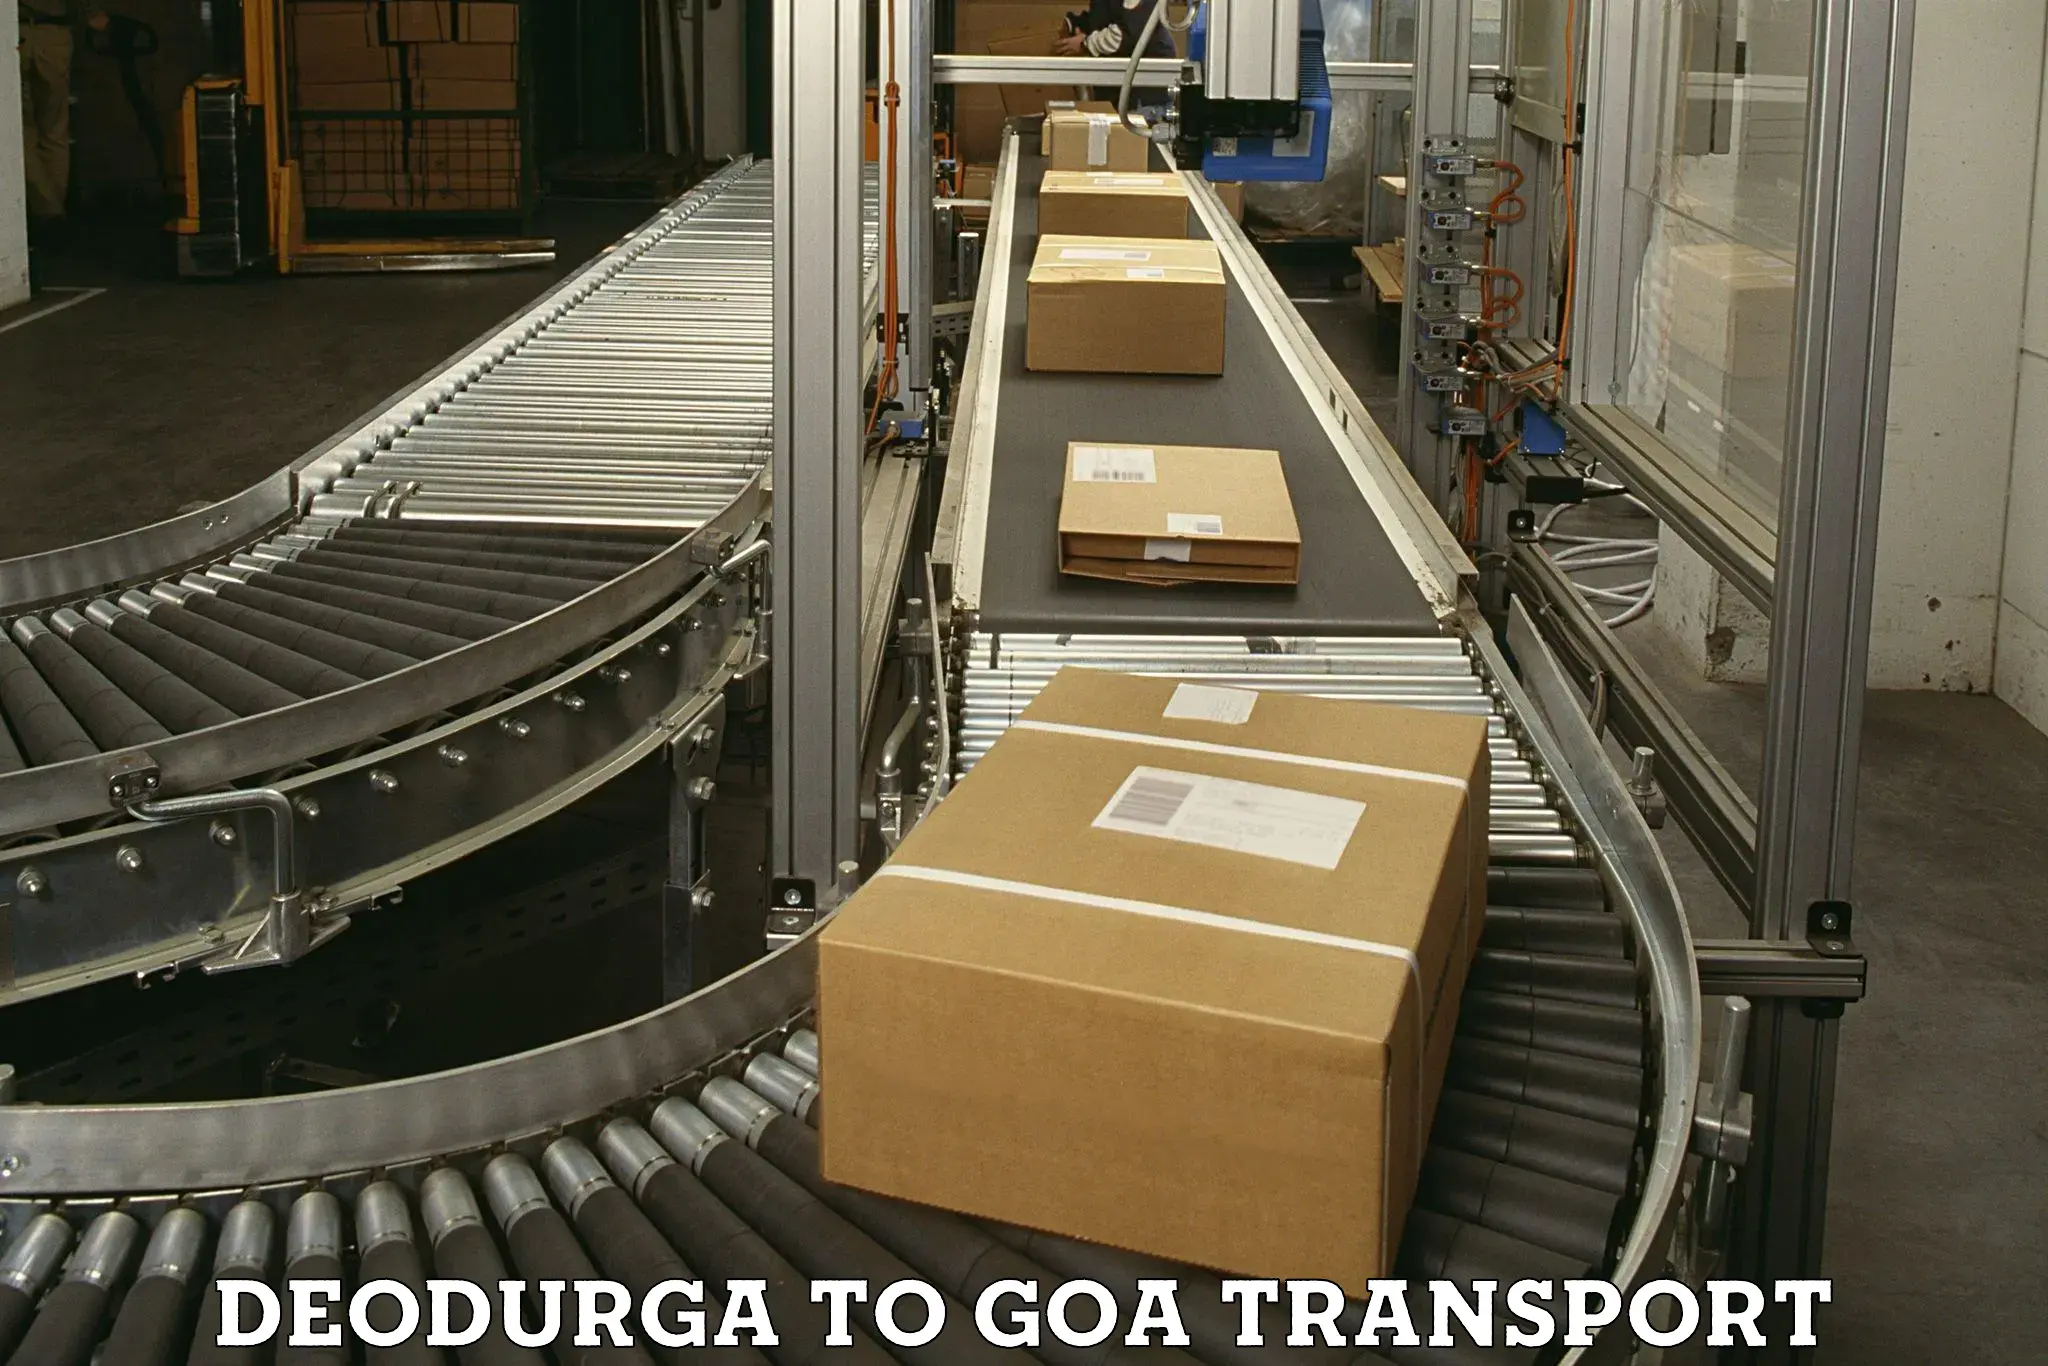 Two wheeler transport services Deodurga to IIT Goa